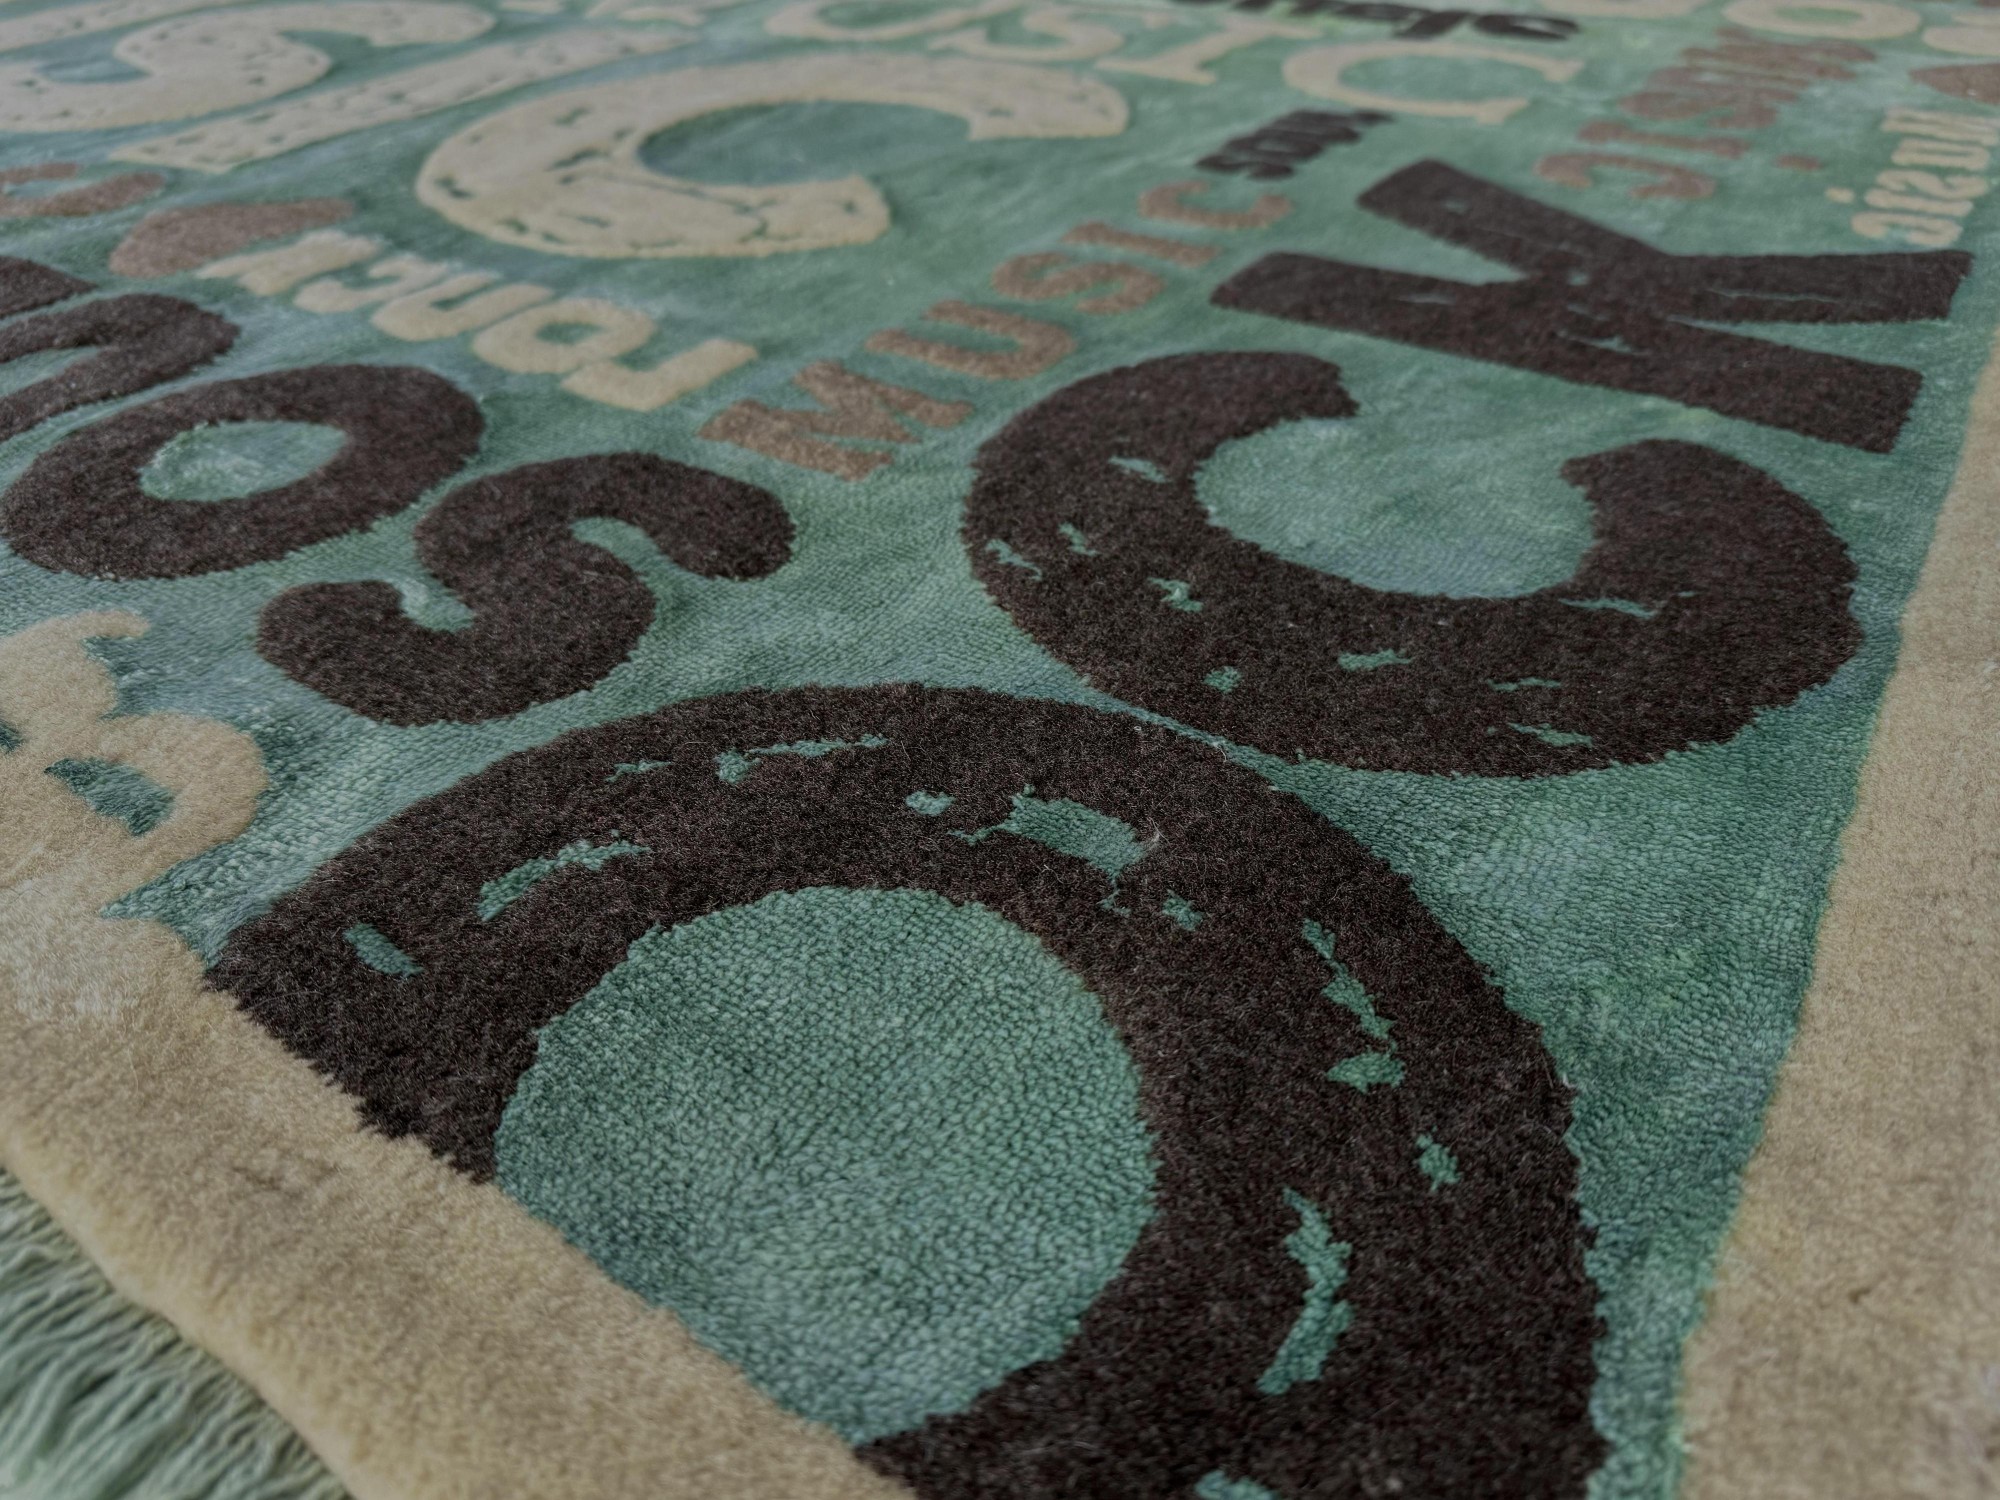 فرش پشمی ماشینی طبیعی و ارگانیک کد 0087 - زمینه سبز کم رنگ - حاشیه کرم